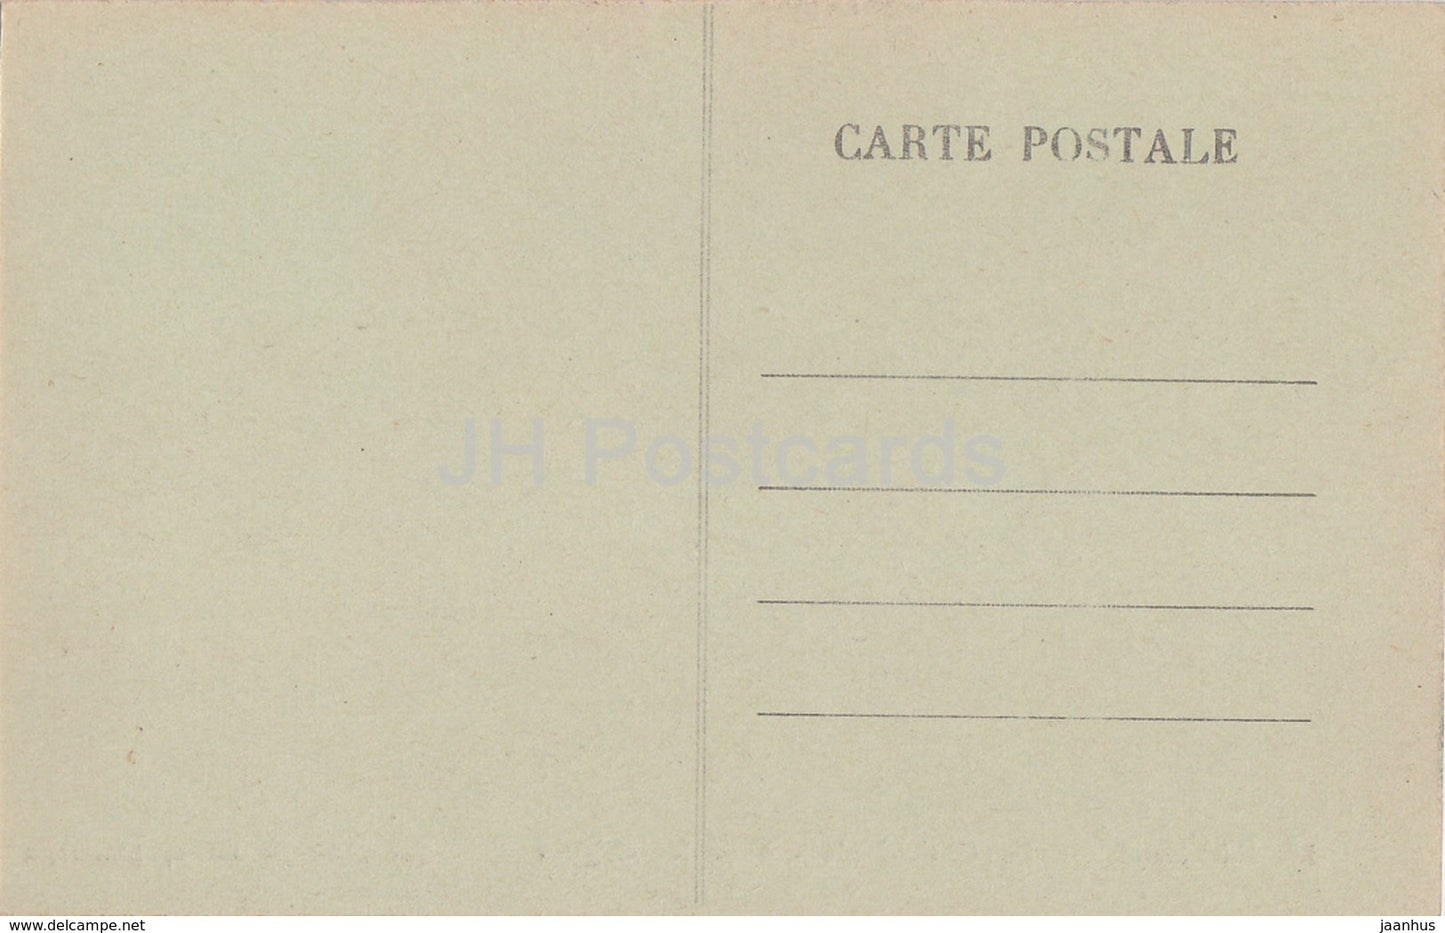 Bayeux - La Cathédrale - Vers les Orgues - 16 - cathédrale - carte postale ancienne - France - inutilisée